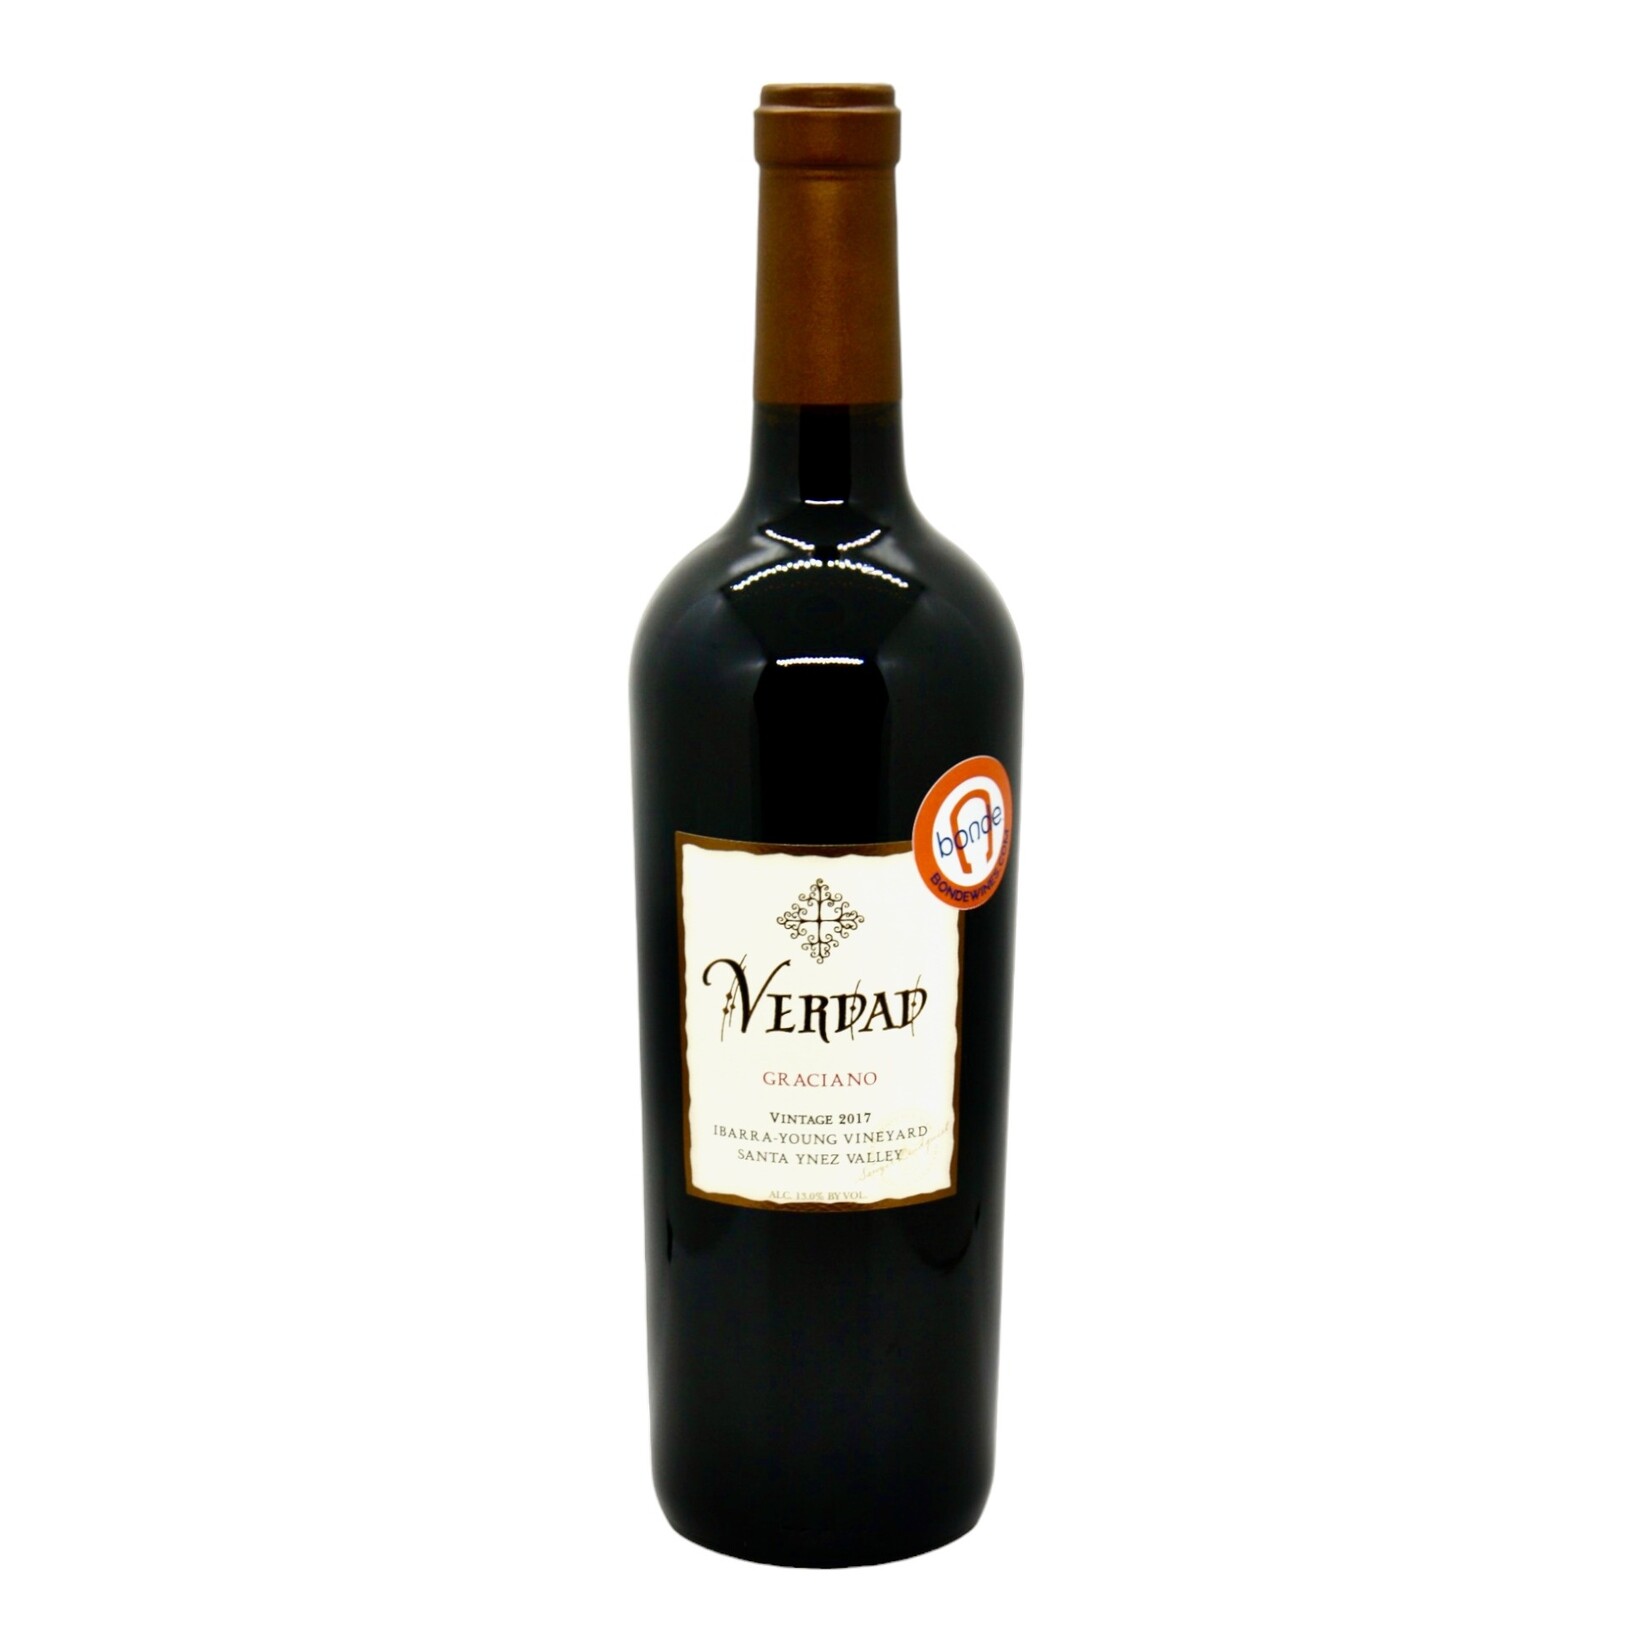 Verdad Verdad Wines, Graciano 2017, Ibarra Young Vineyard, Santa Ynez Valley, Santa Barbara County, CA